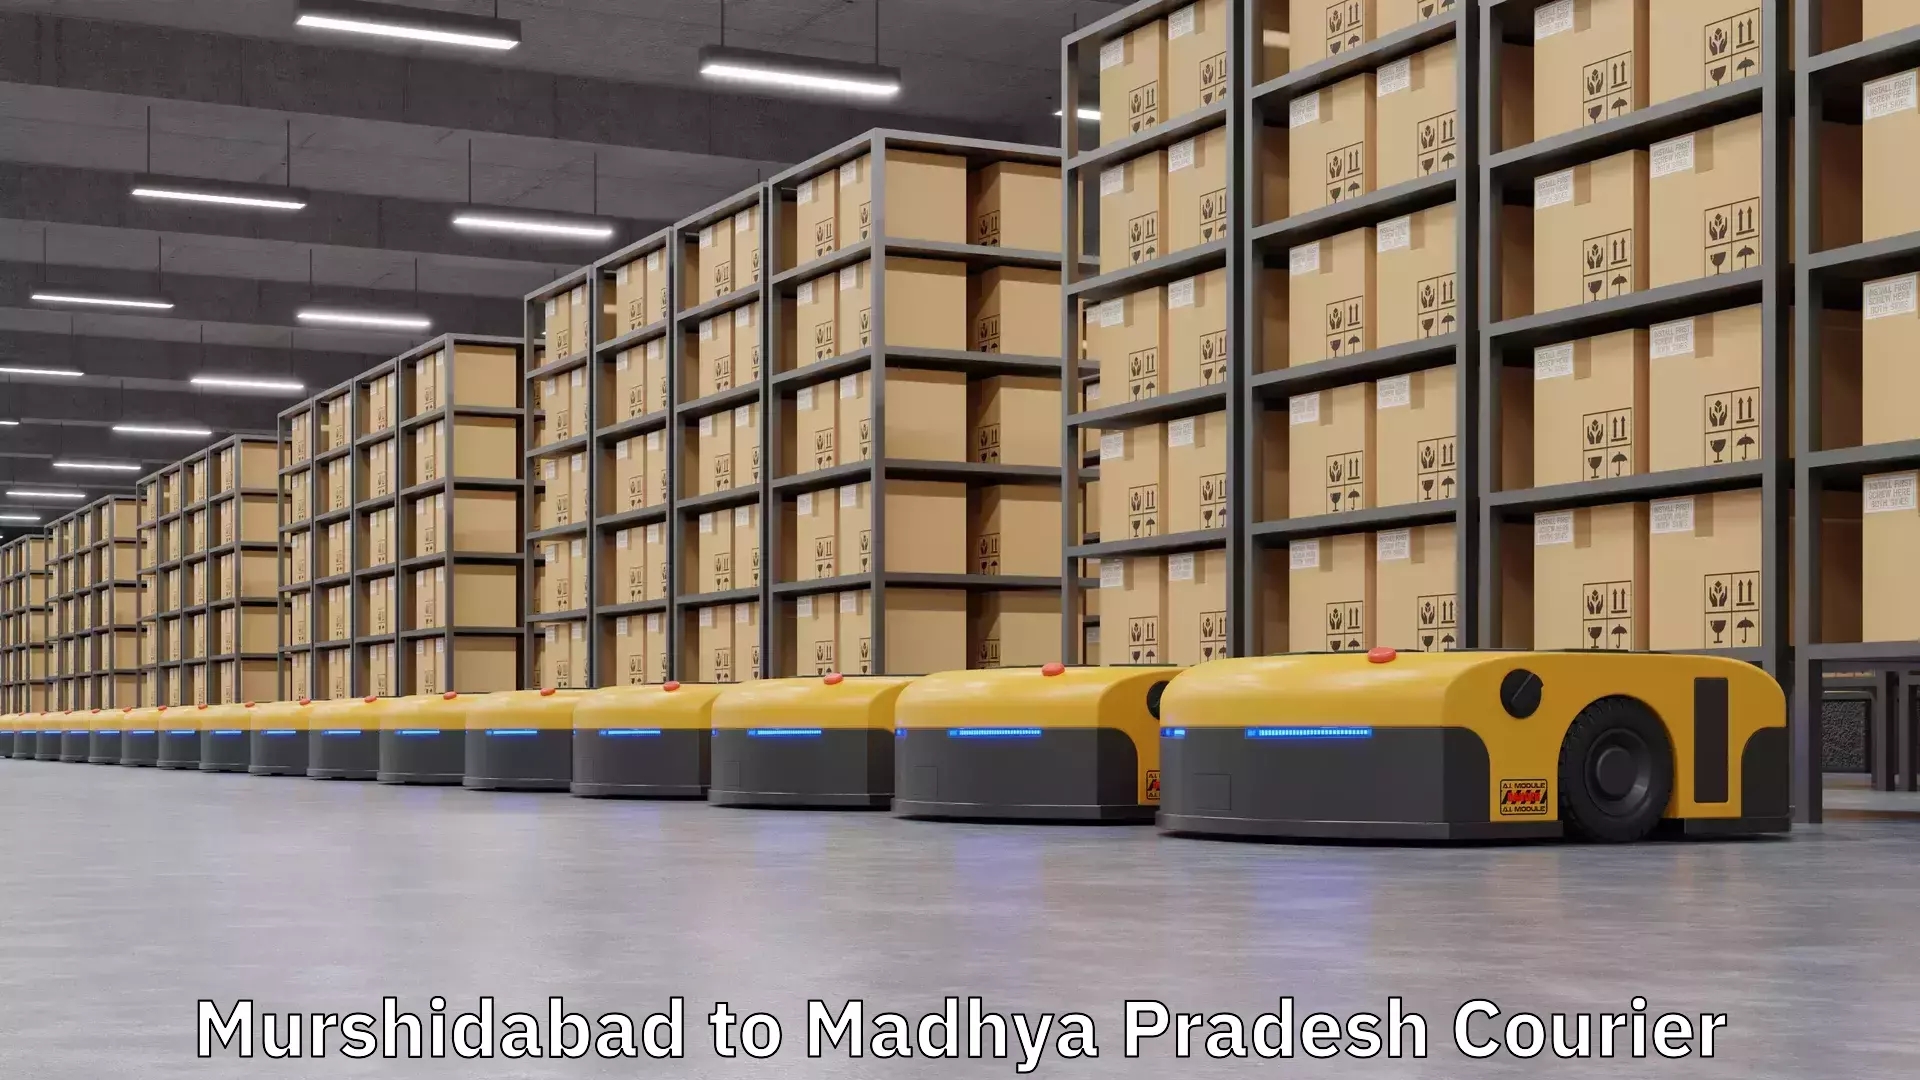 Global shipping solutions Murshidabad to Madhya Pradesh